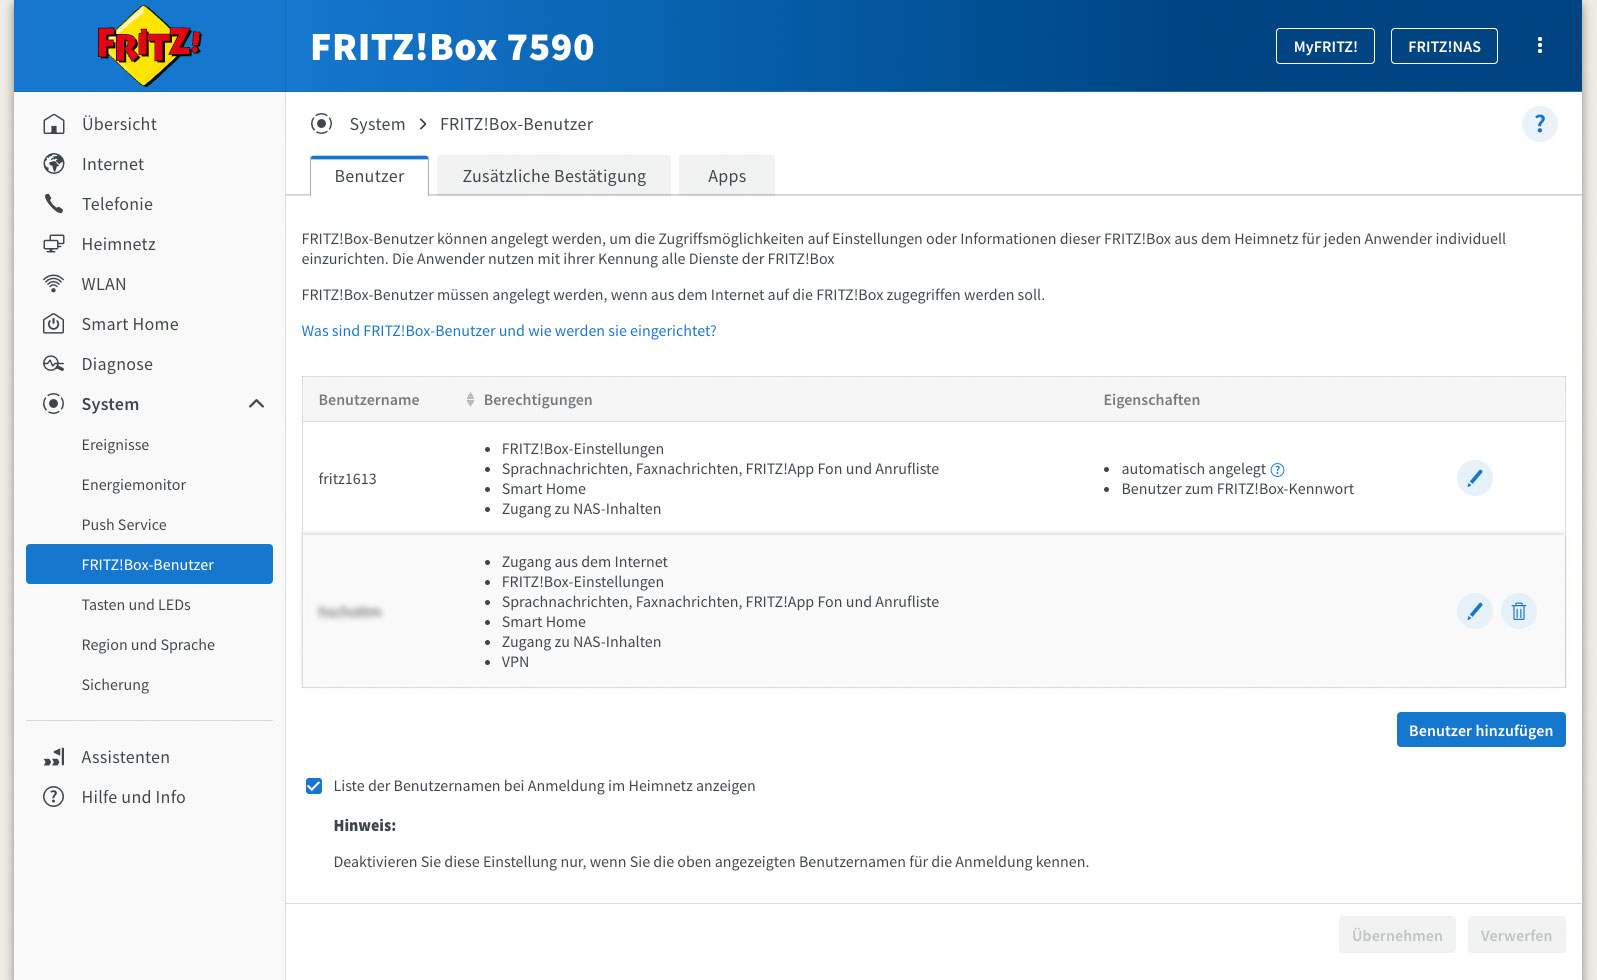 FRITZ!Box user settings